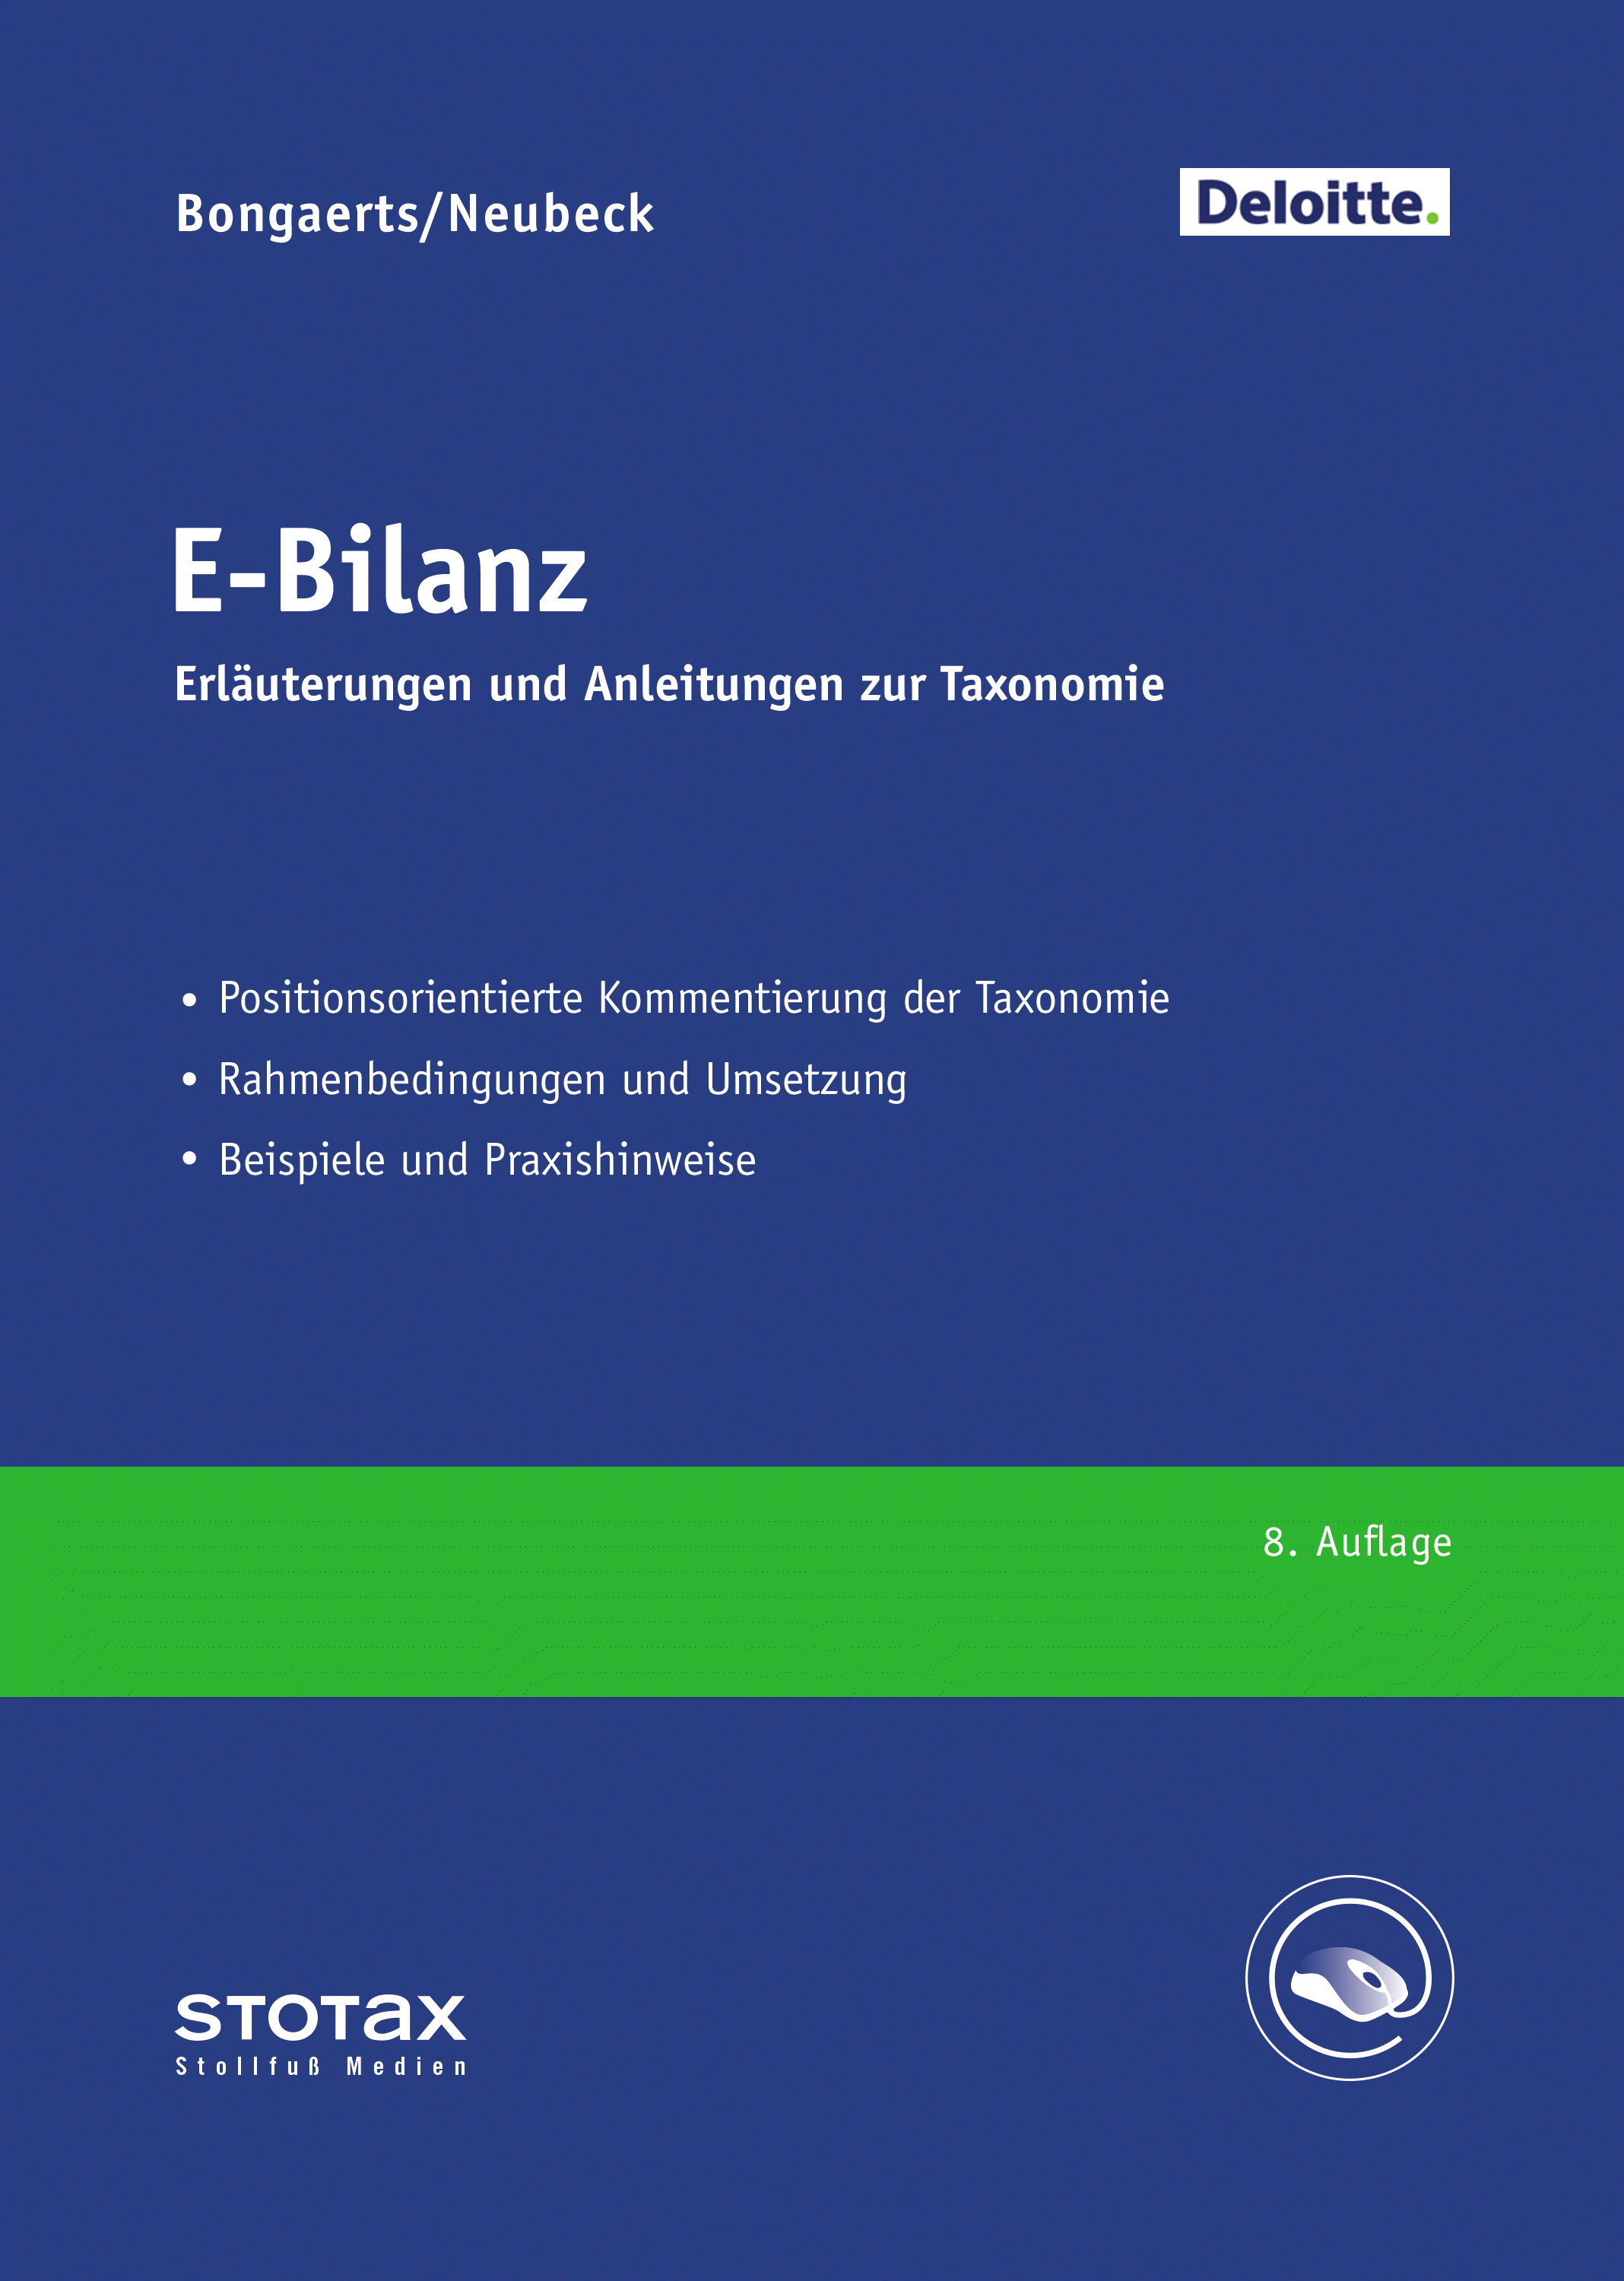 Abbildung: E-Bilanz